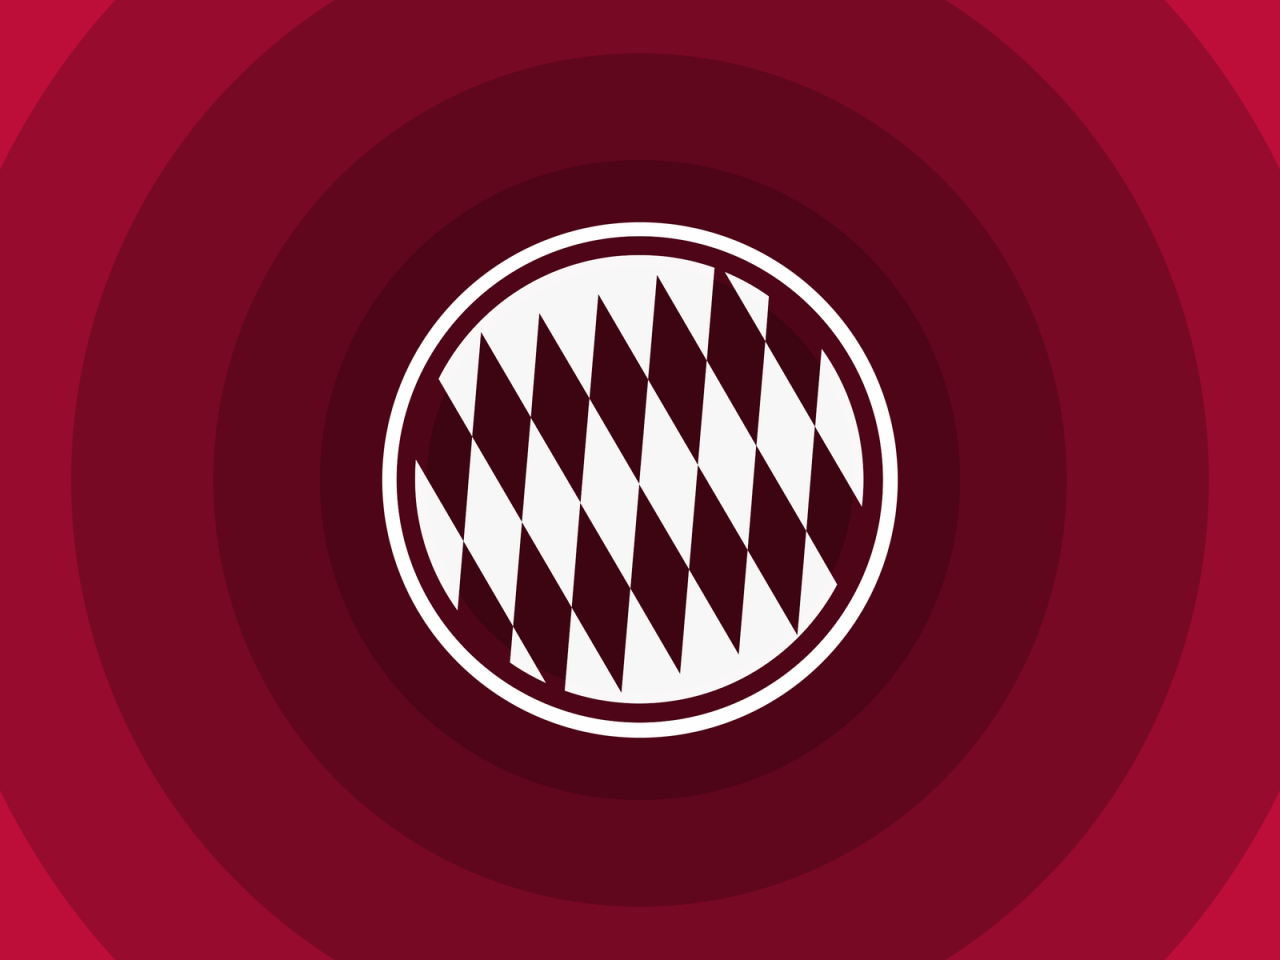 FC Bayern Munich Minimal Logo for 1280 x 960 resolution